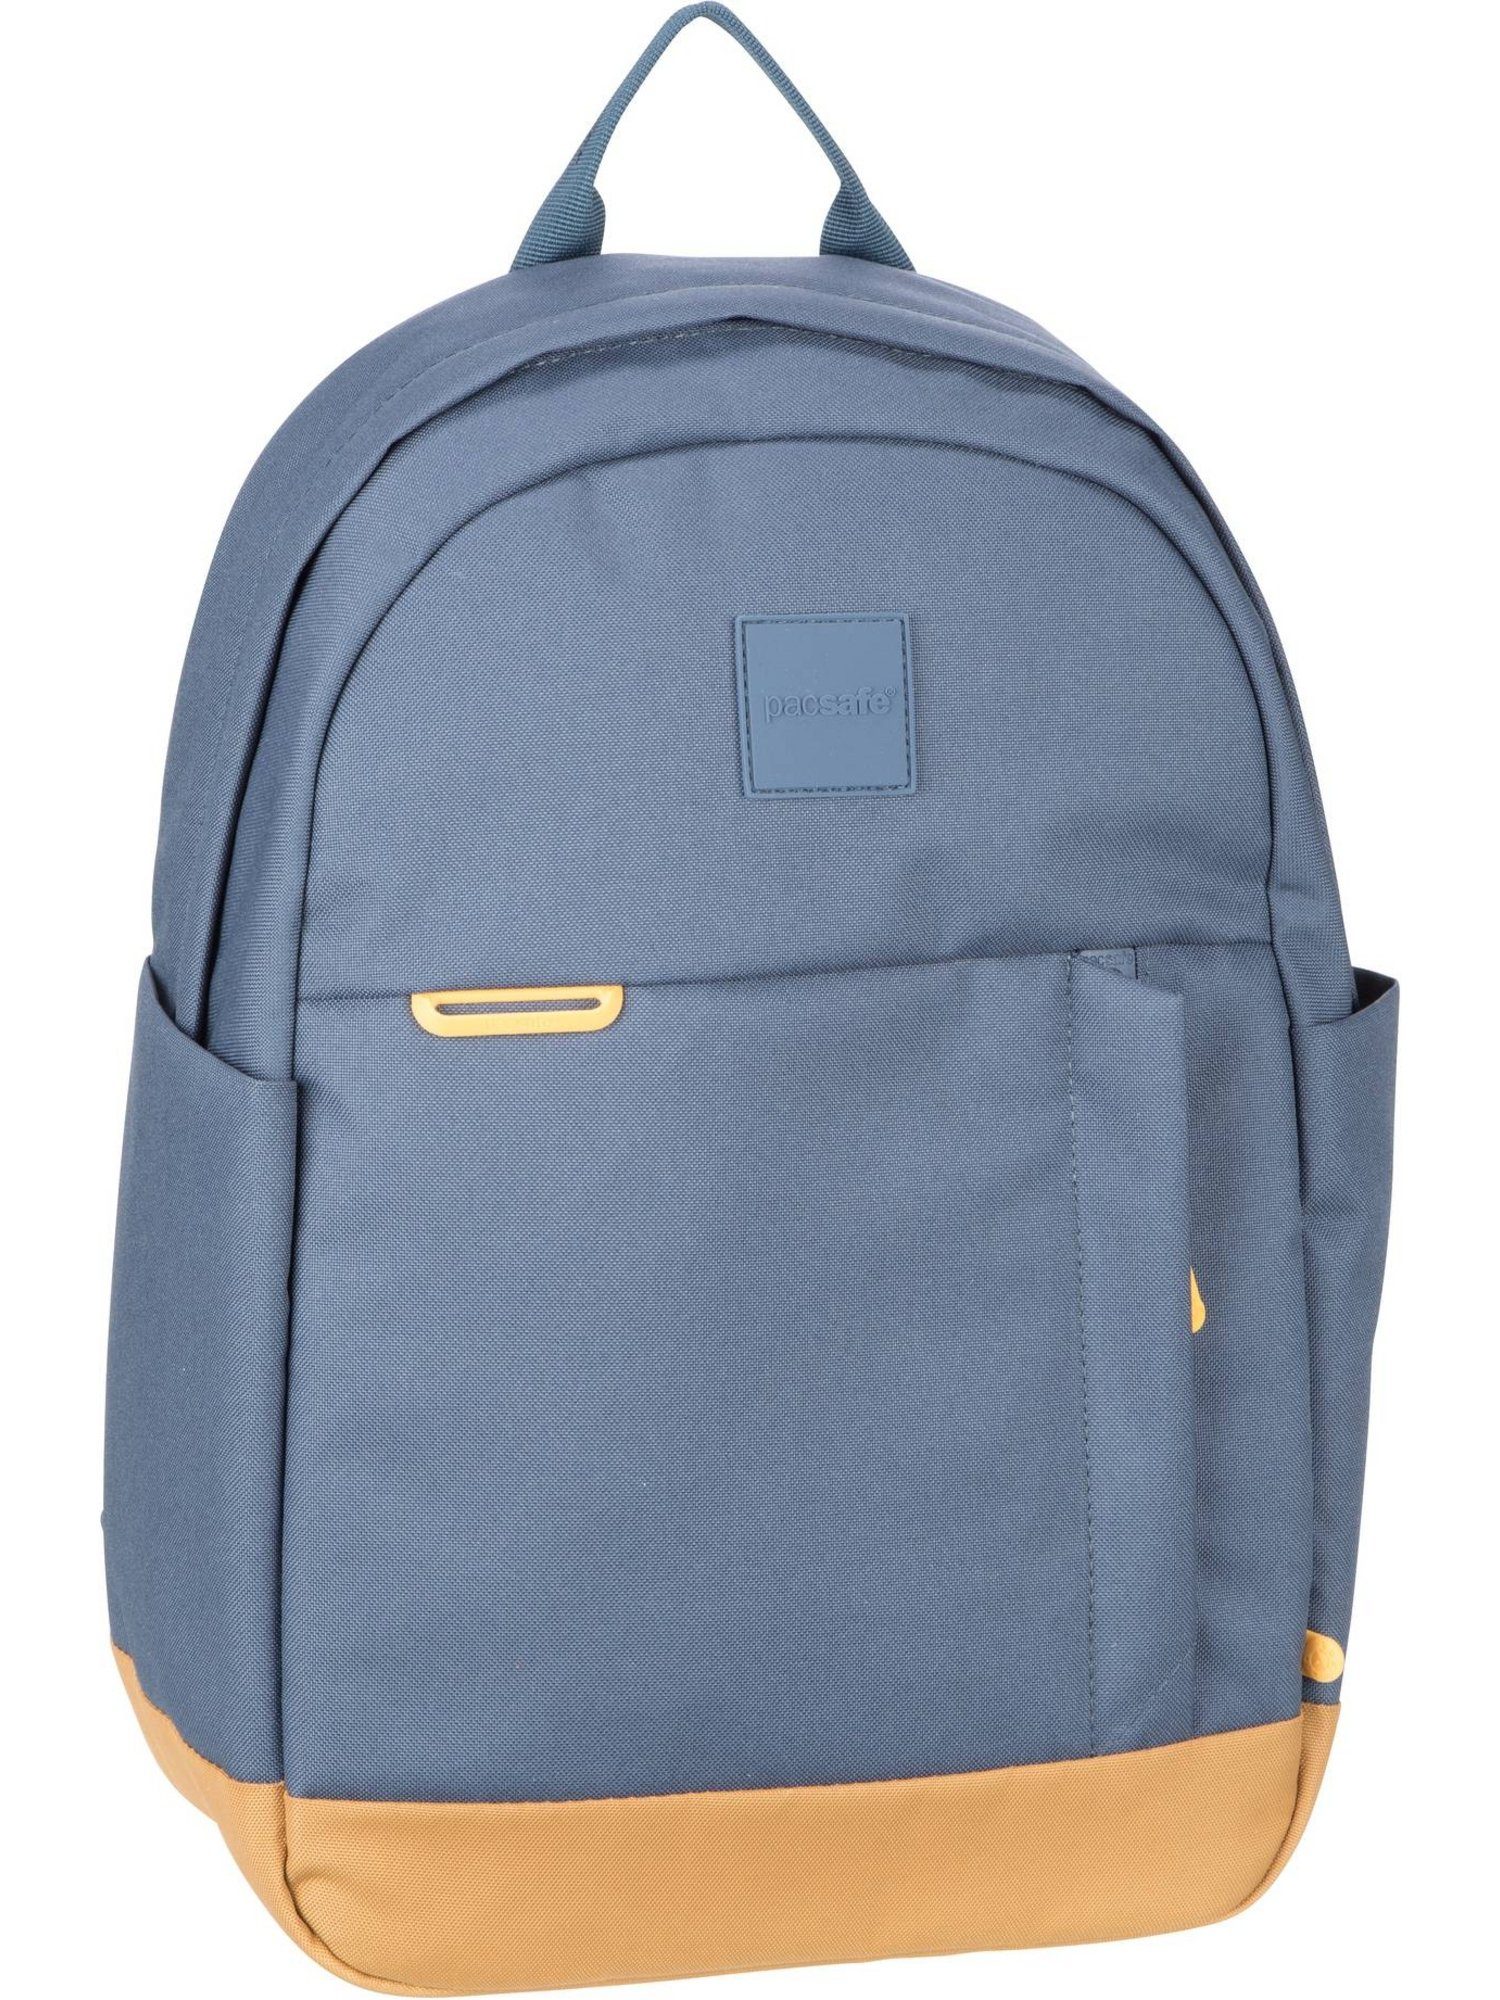 15L GO Blue Backpack Coastal Rucksack Pacsafe